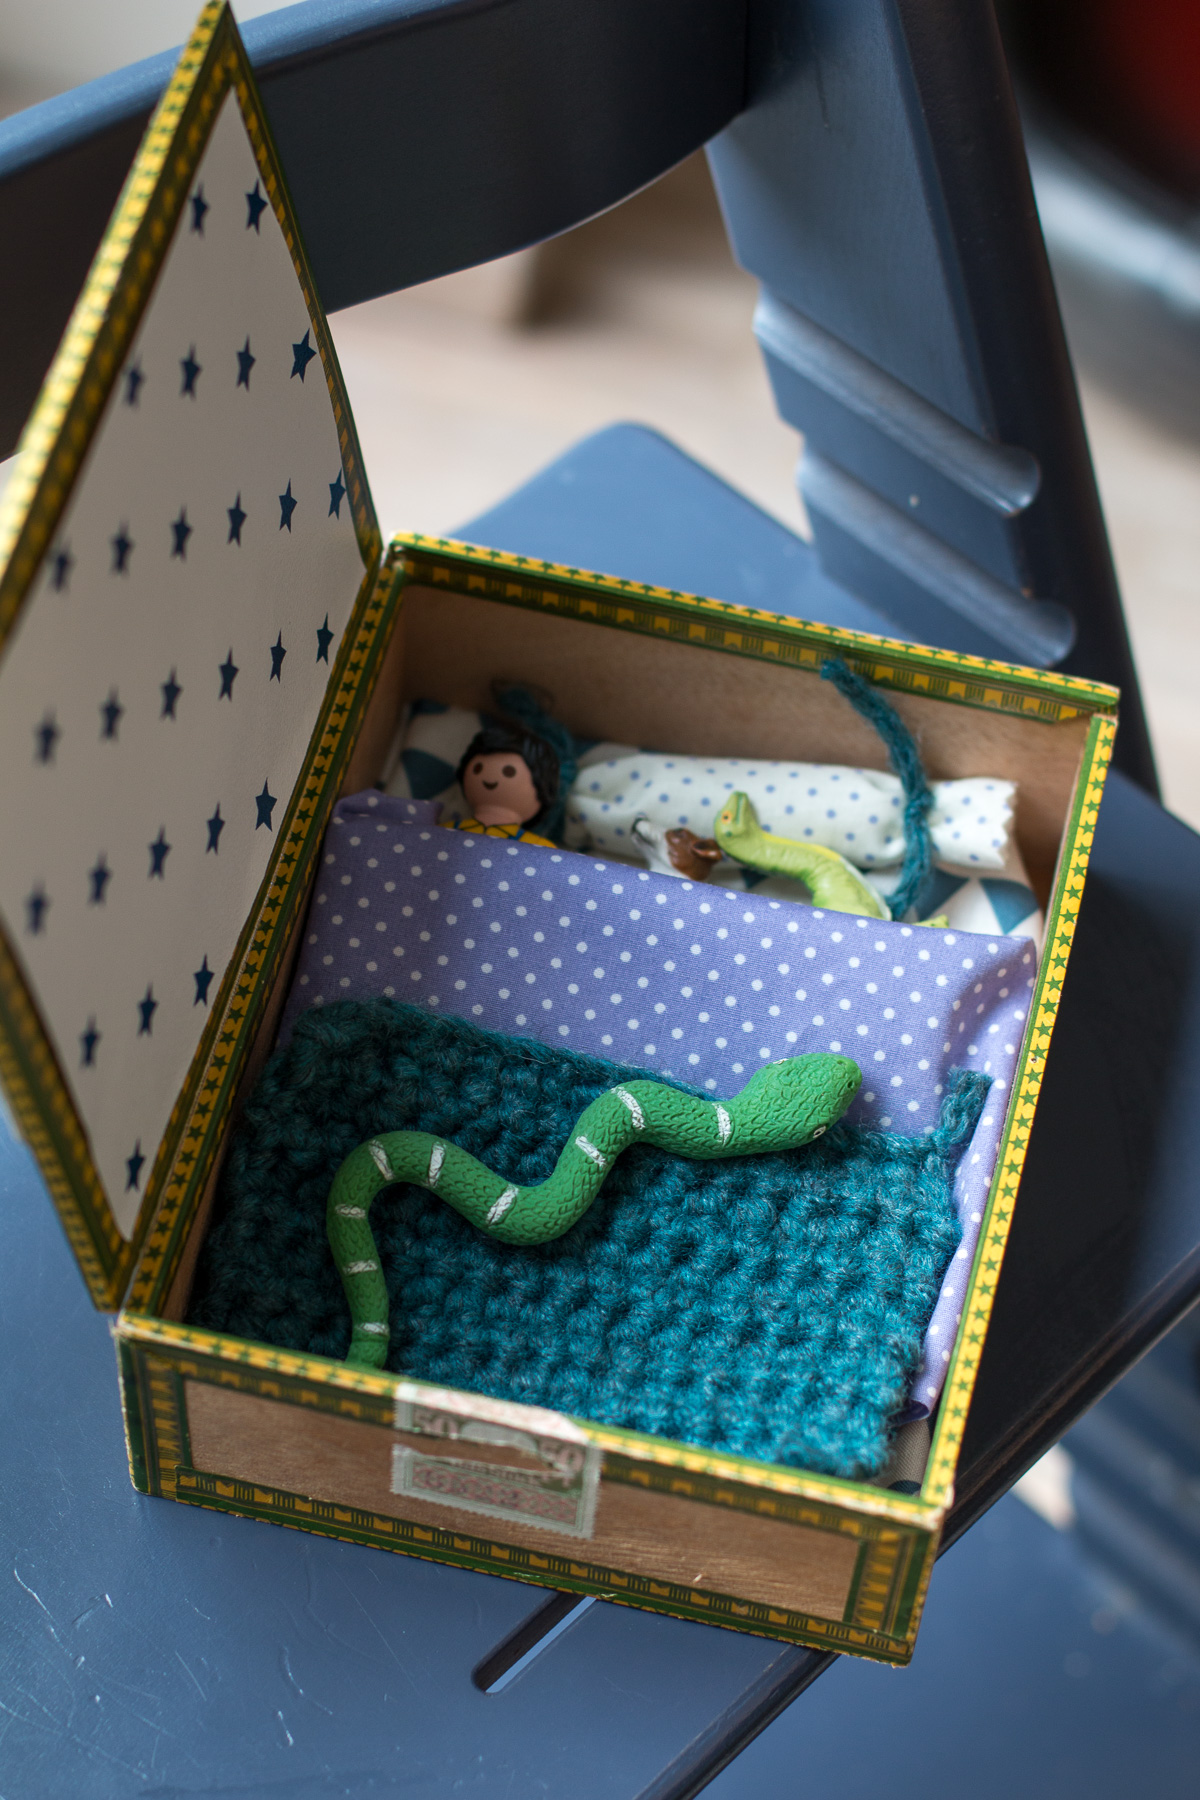 Das Dosenmausehaus - ein kleine Kästchen für die liebsten Spielfiguren und geheime Schätze. Ein tolles DIY mit und für Kinder! Viel Spaß beim basteln!